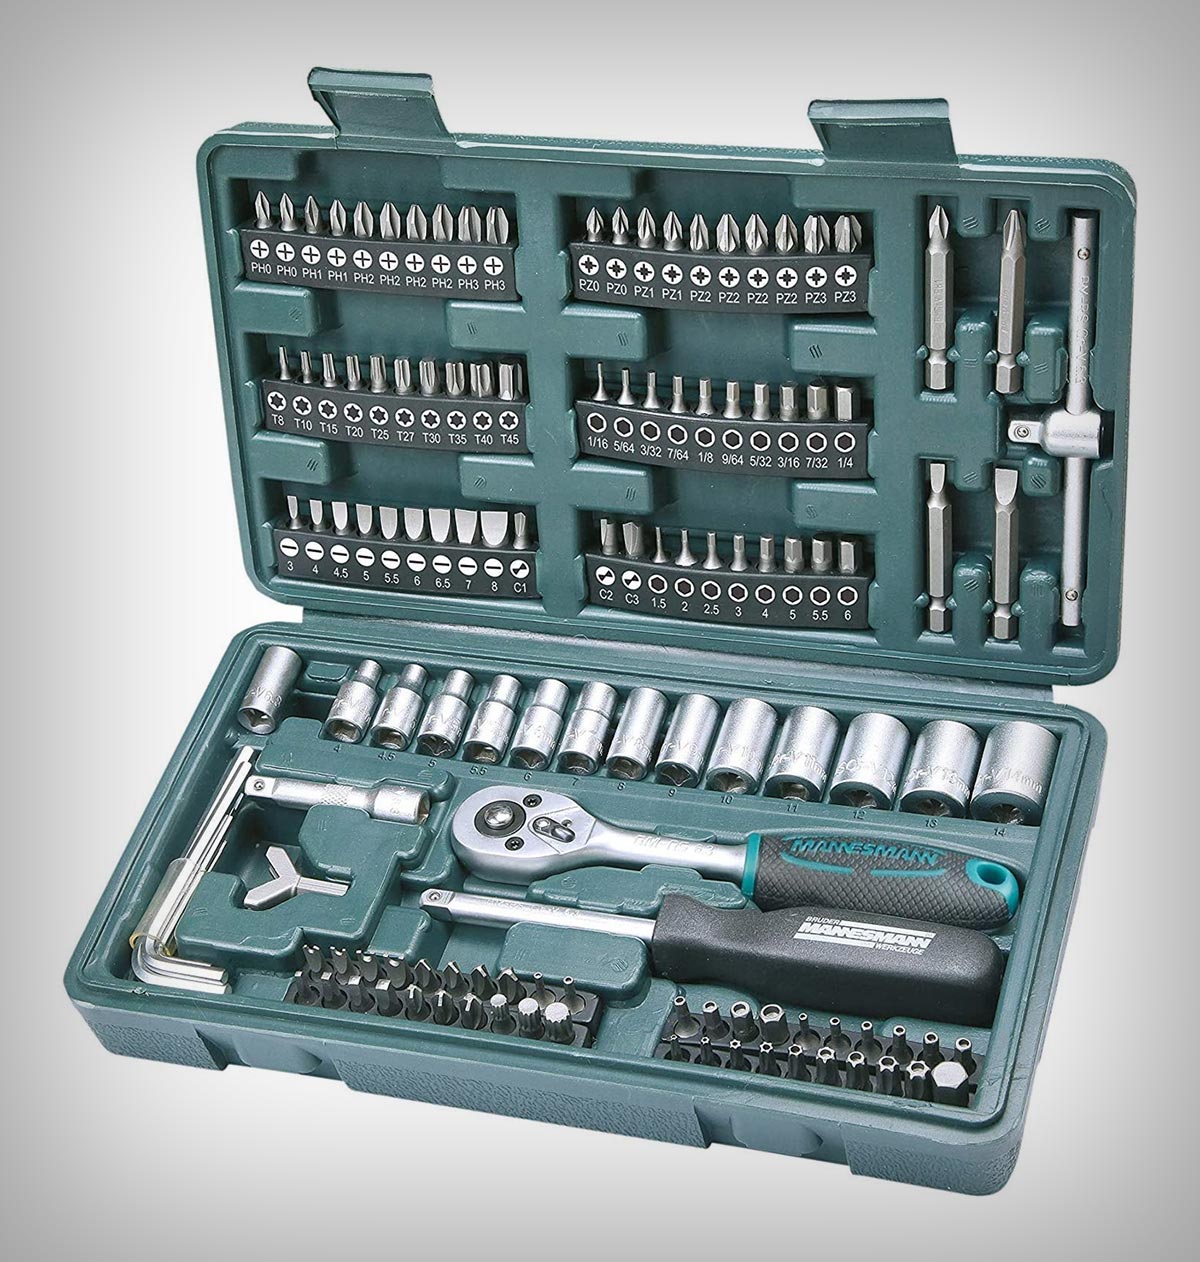 Mannesmann M29166, la caja de herramientas económica más vendida de Amazon